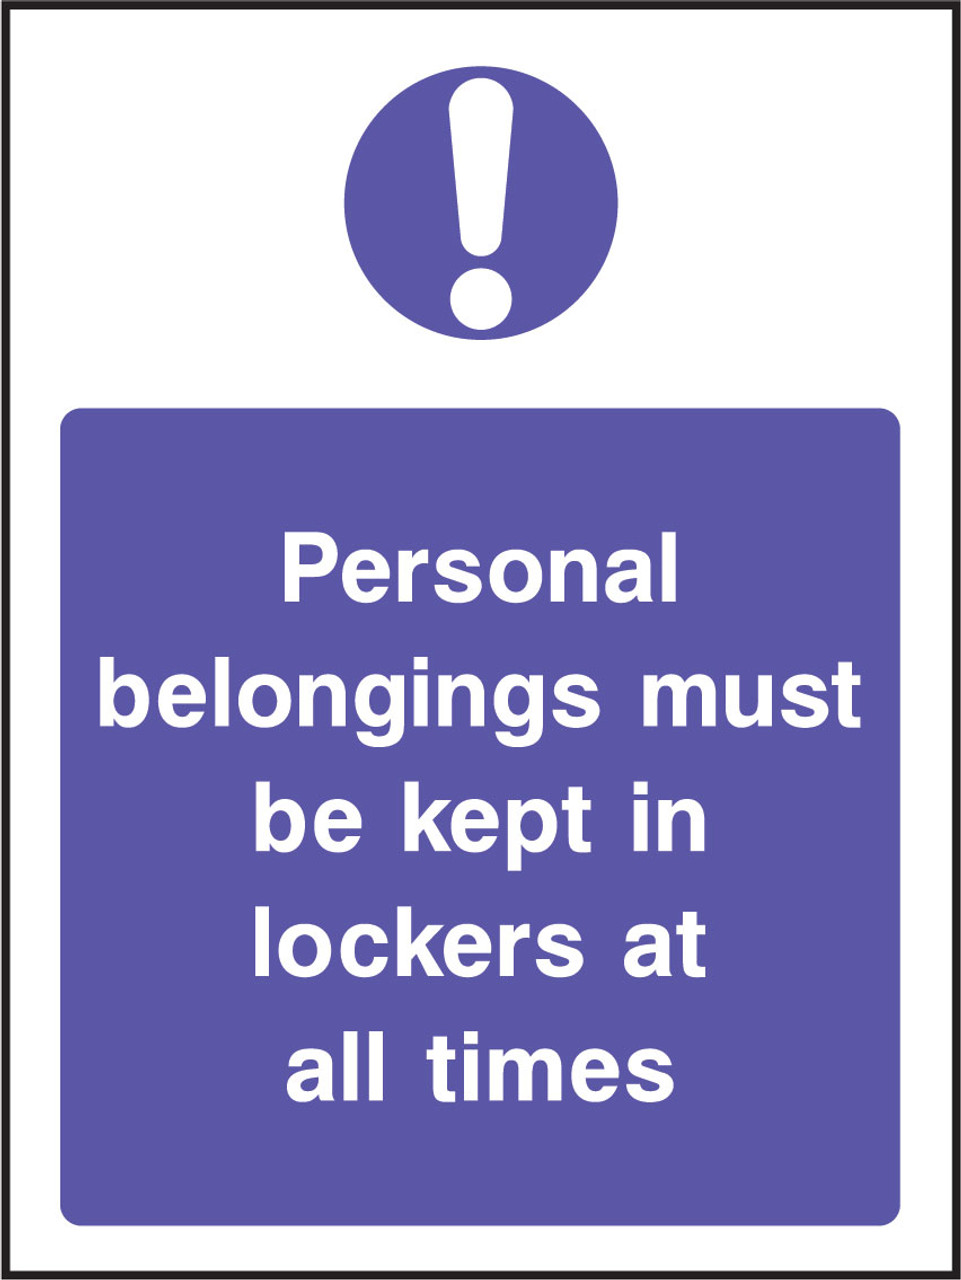 Personal belongings must be kept in lockers sign